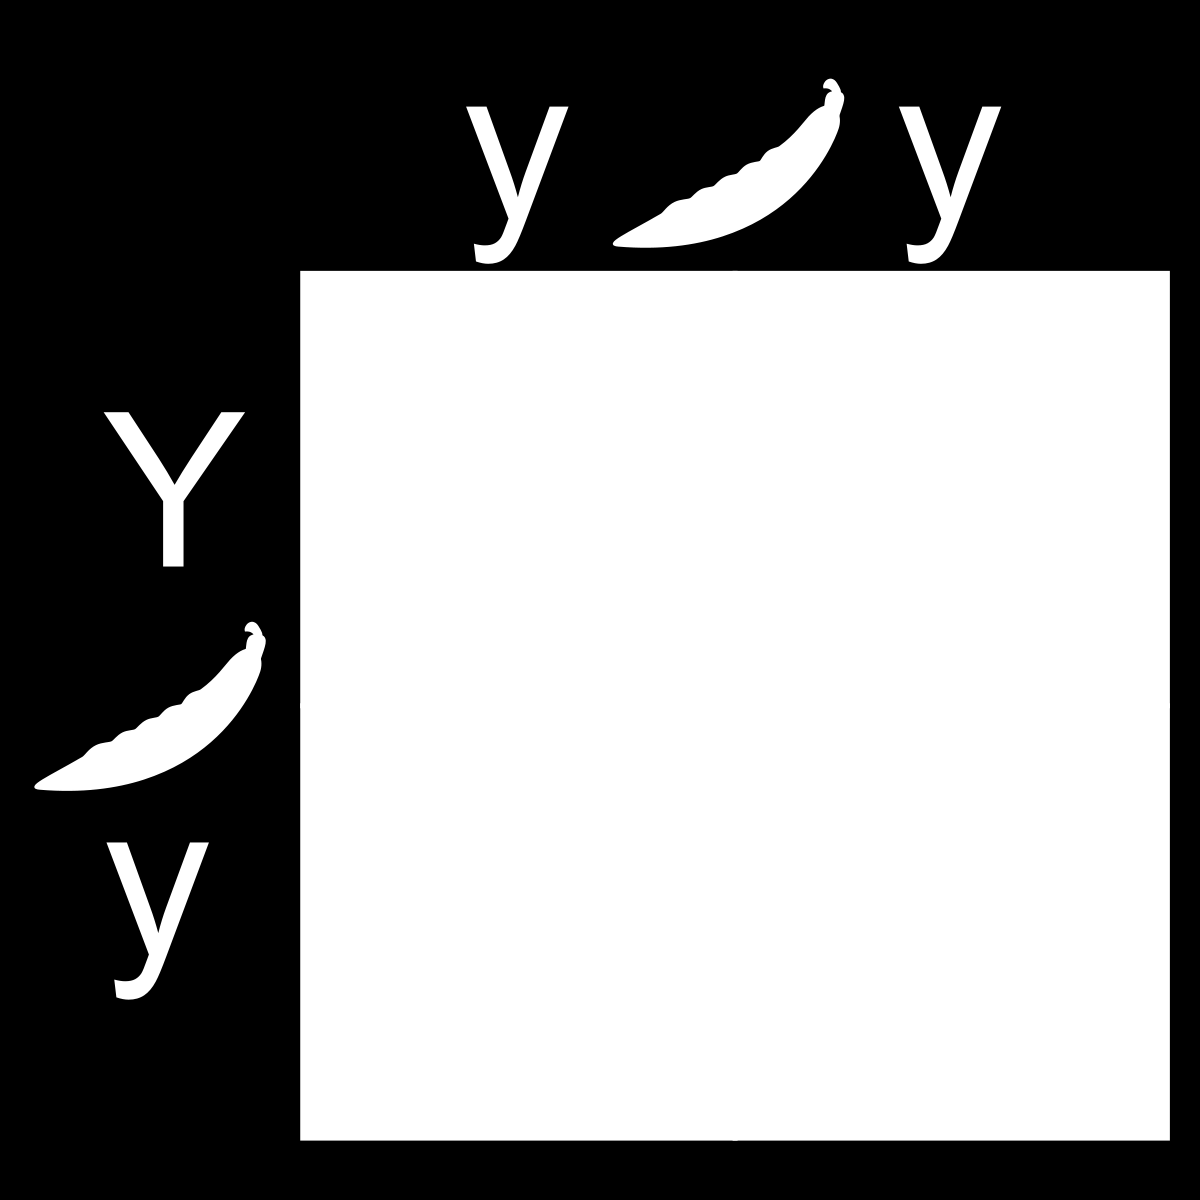 Örn., A simgesi ile gösterilen bir doğu ladini bireyinin, AxB; AxC; AxD; AxE ve AxF çaprazlamaları sonucunda, çaprazlama ürünü döllerin ortalama boyları, C bireyinin B, D, E ve F bireyleri ile